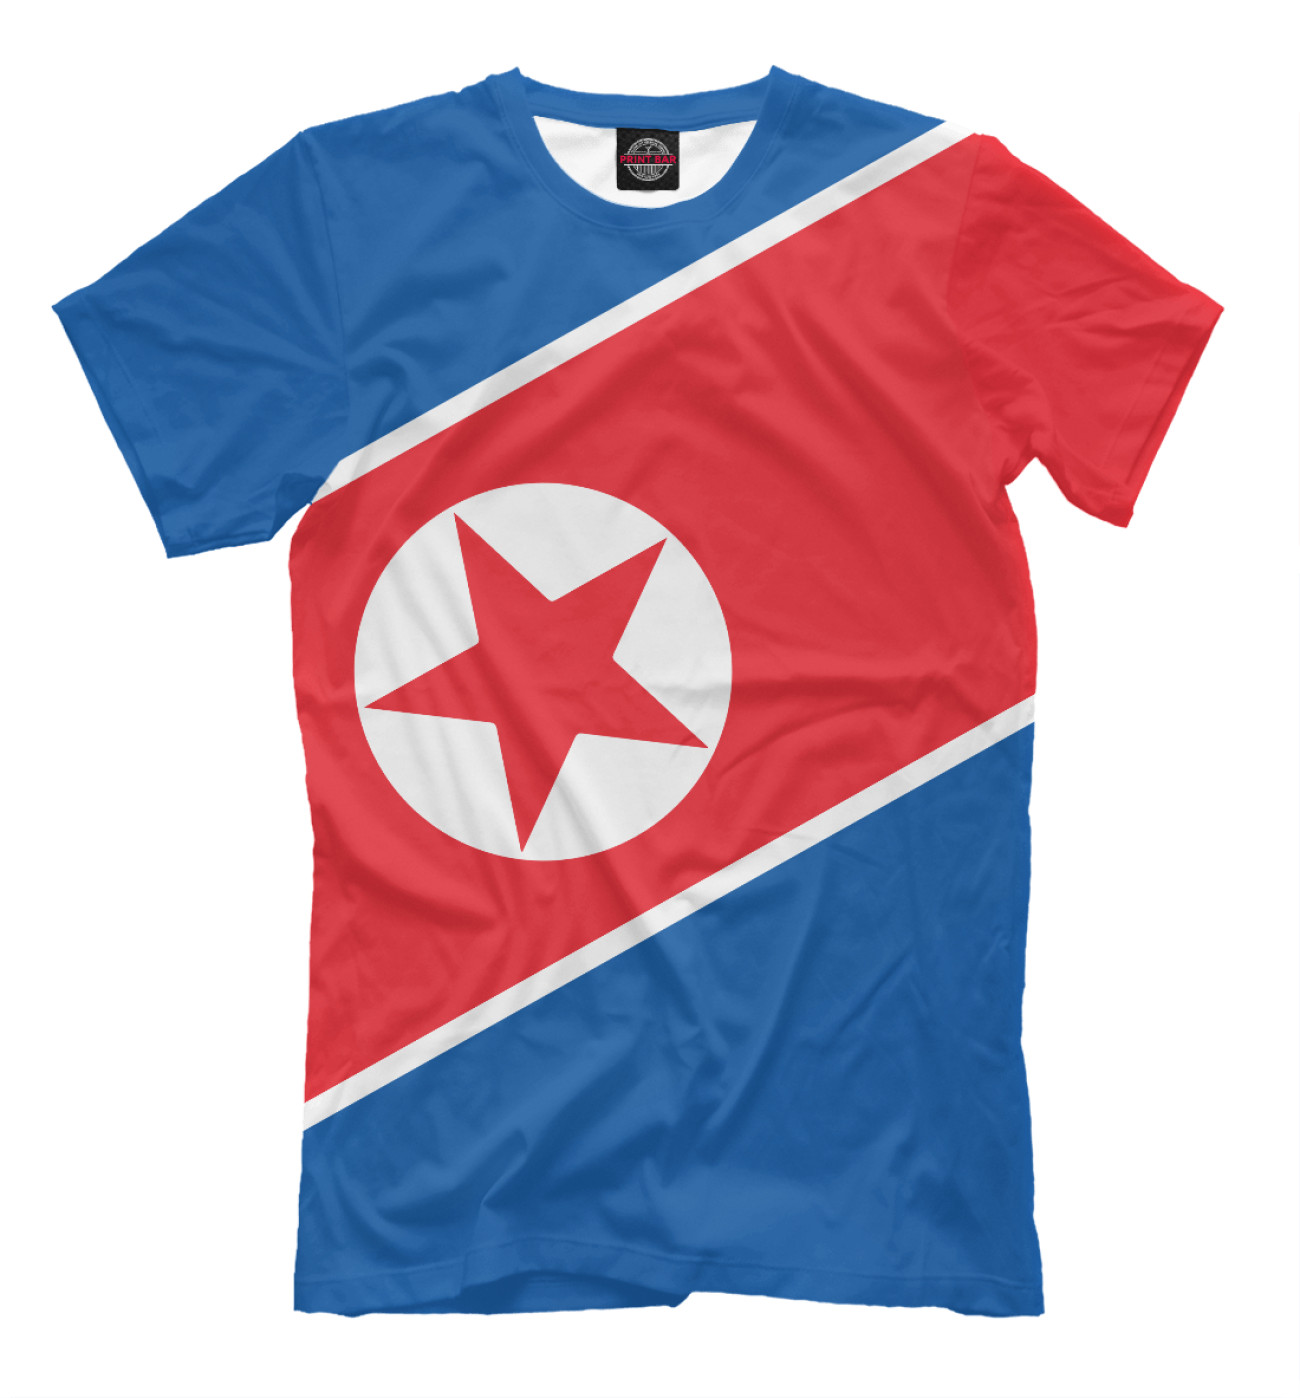 Мужская Футболка Северная Корея, артикул: CTS-499577-fut-2